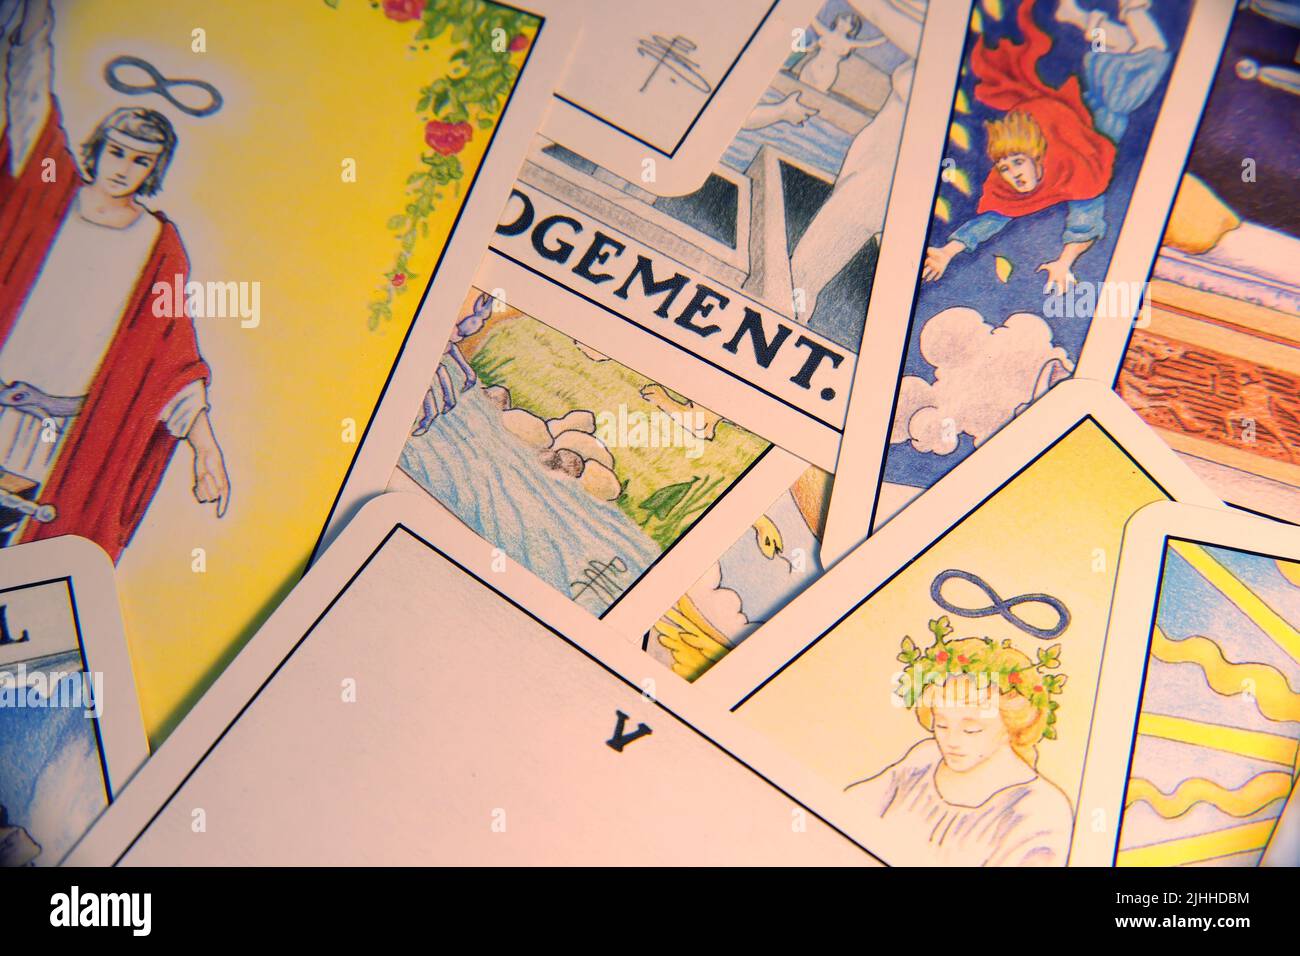 Traditionelle Tarot-Karten, die in einem unordentlichen Stapel auf einer flachen Oberfläche liegen, nah genug, um jedes Detail zu sehen. Echte Farben. Kein Filter. Stockfoto